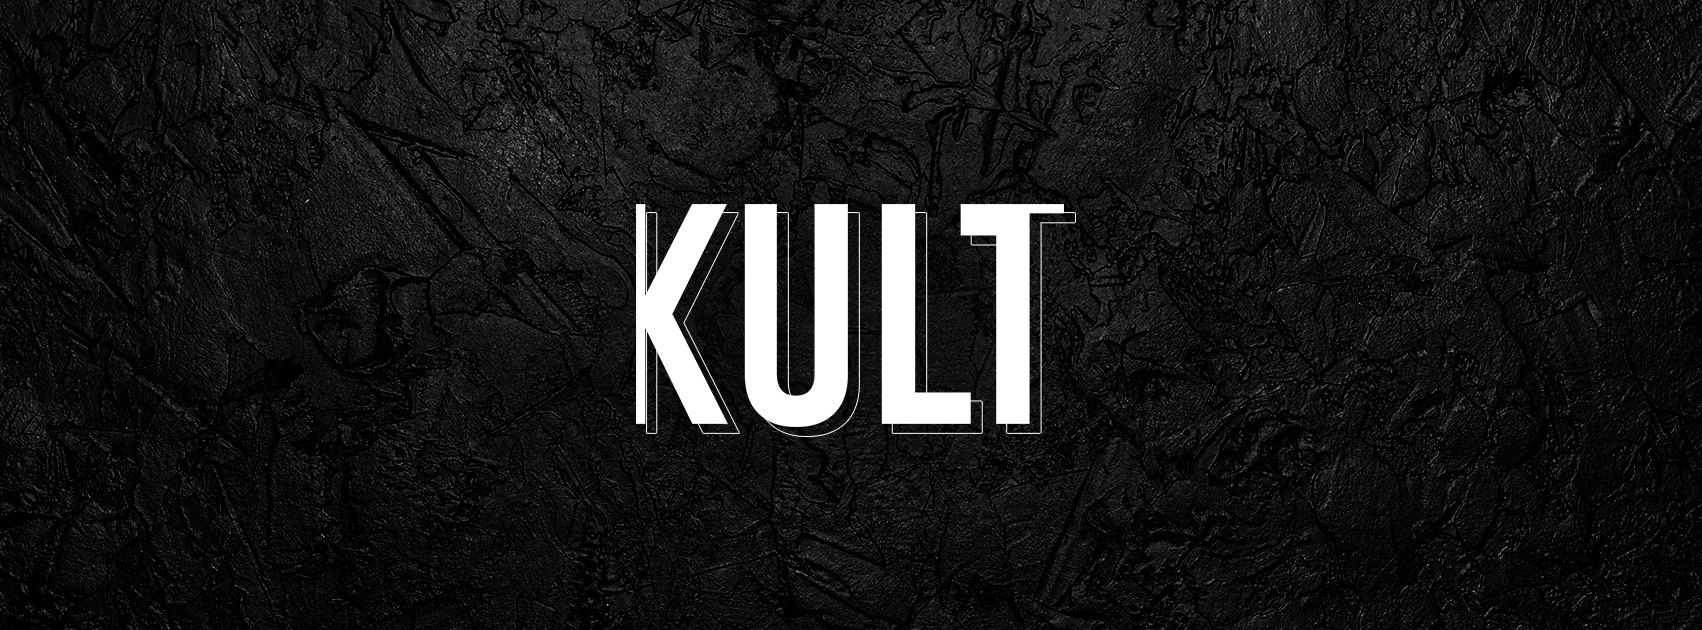 Le média réunionnais Kult parmi les lauréats du Prix francophone de l'innovation dans les médias 2022